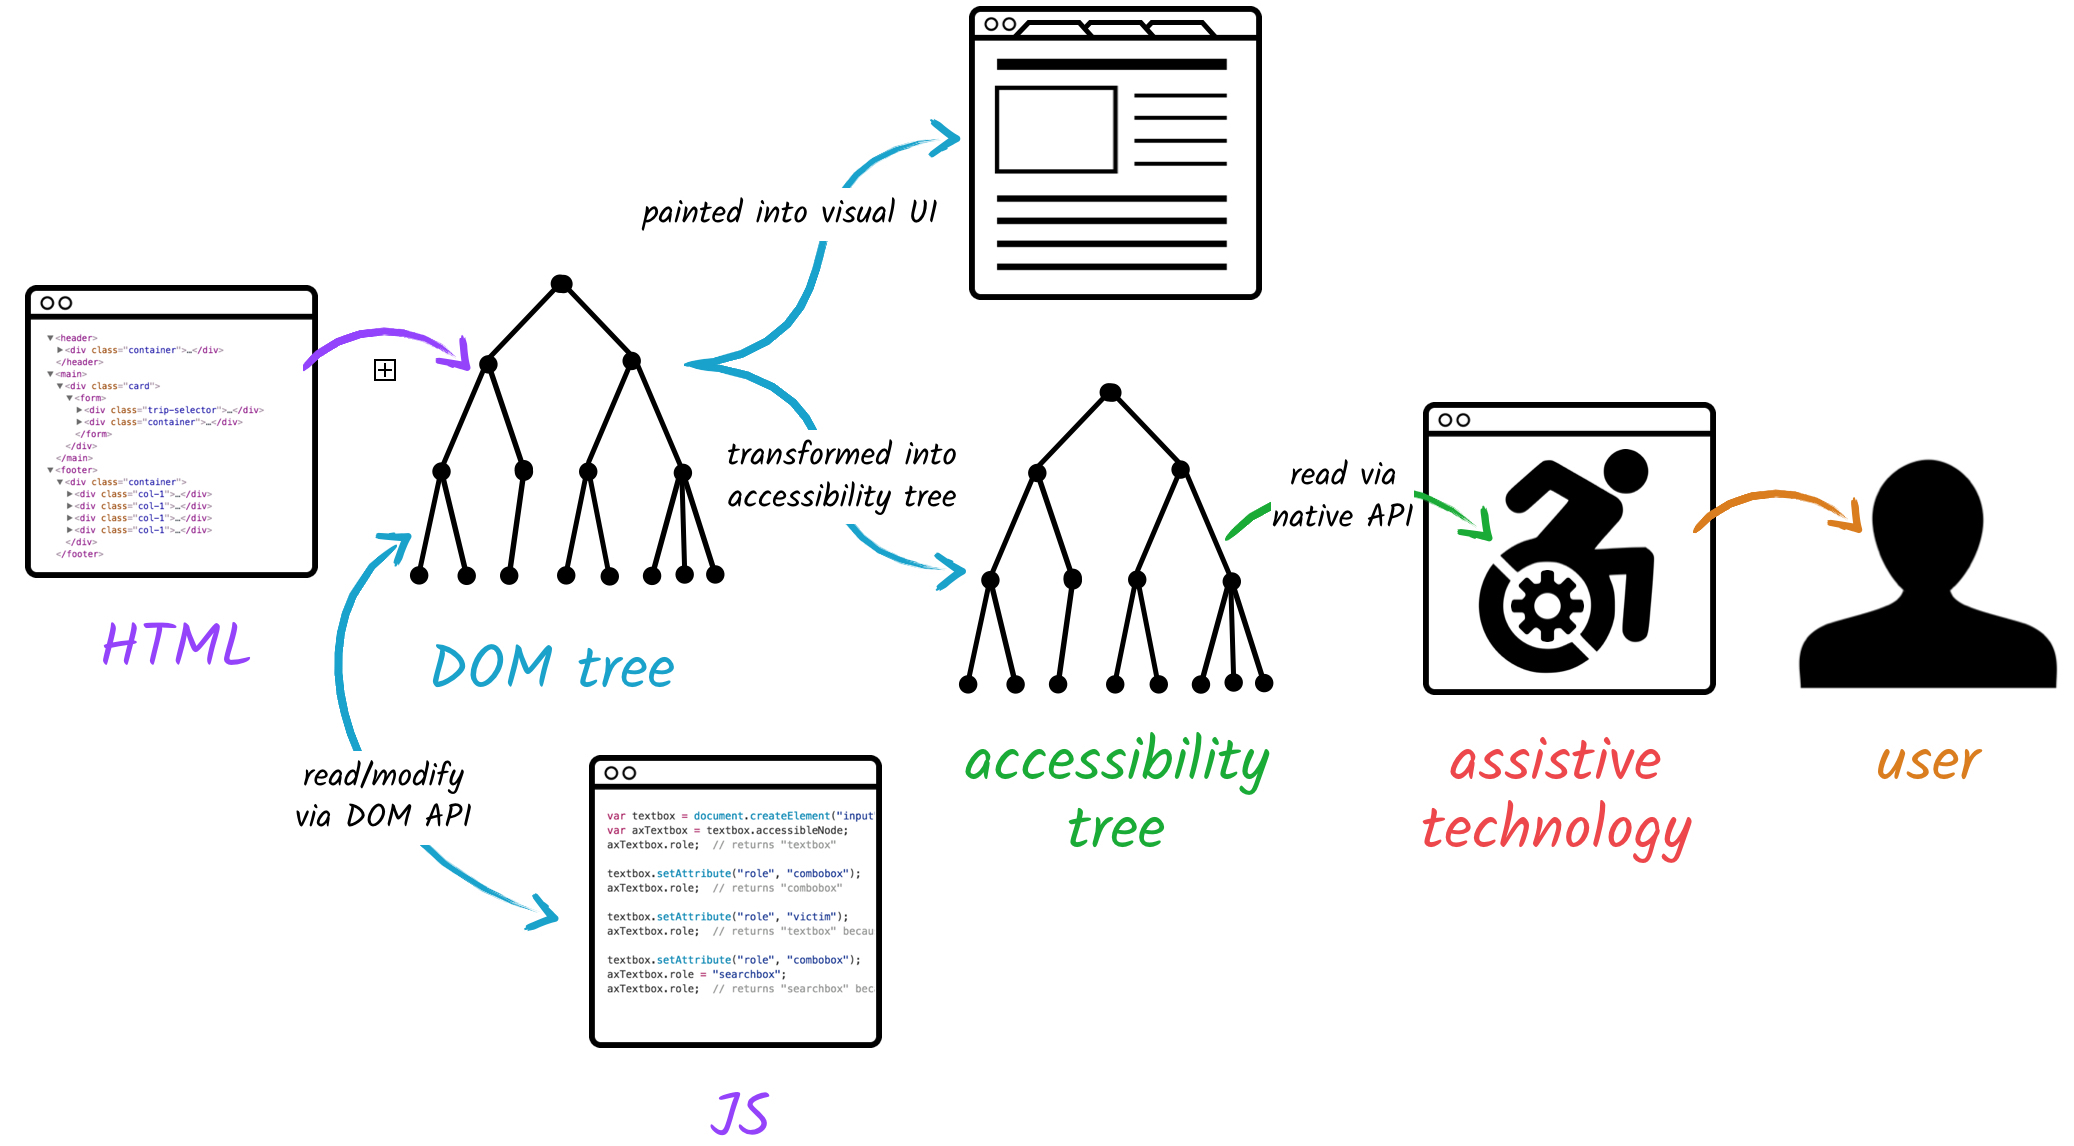 Assistive technology haalt info uit accessibility tree via native API. De accessibility tree is afgeleid uit de DOM tree die het visuele bepaalt en die eventueel gewijzigd kan zijn via JavaScript